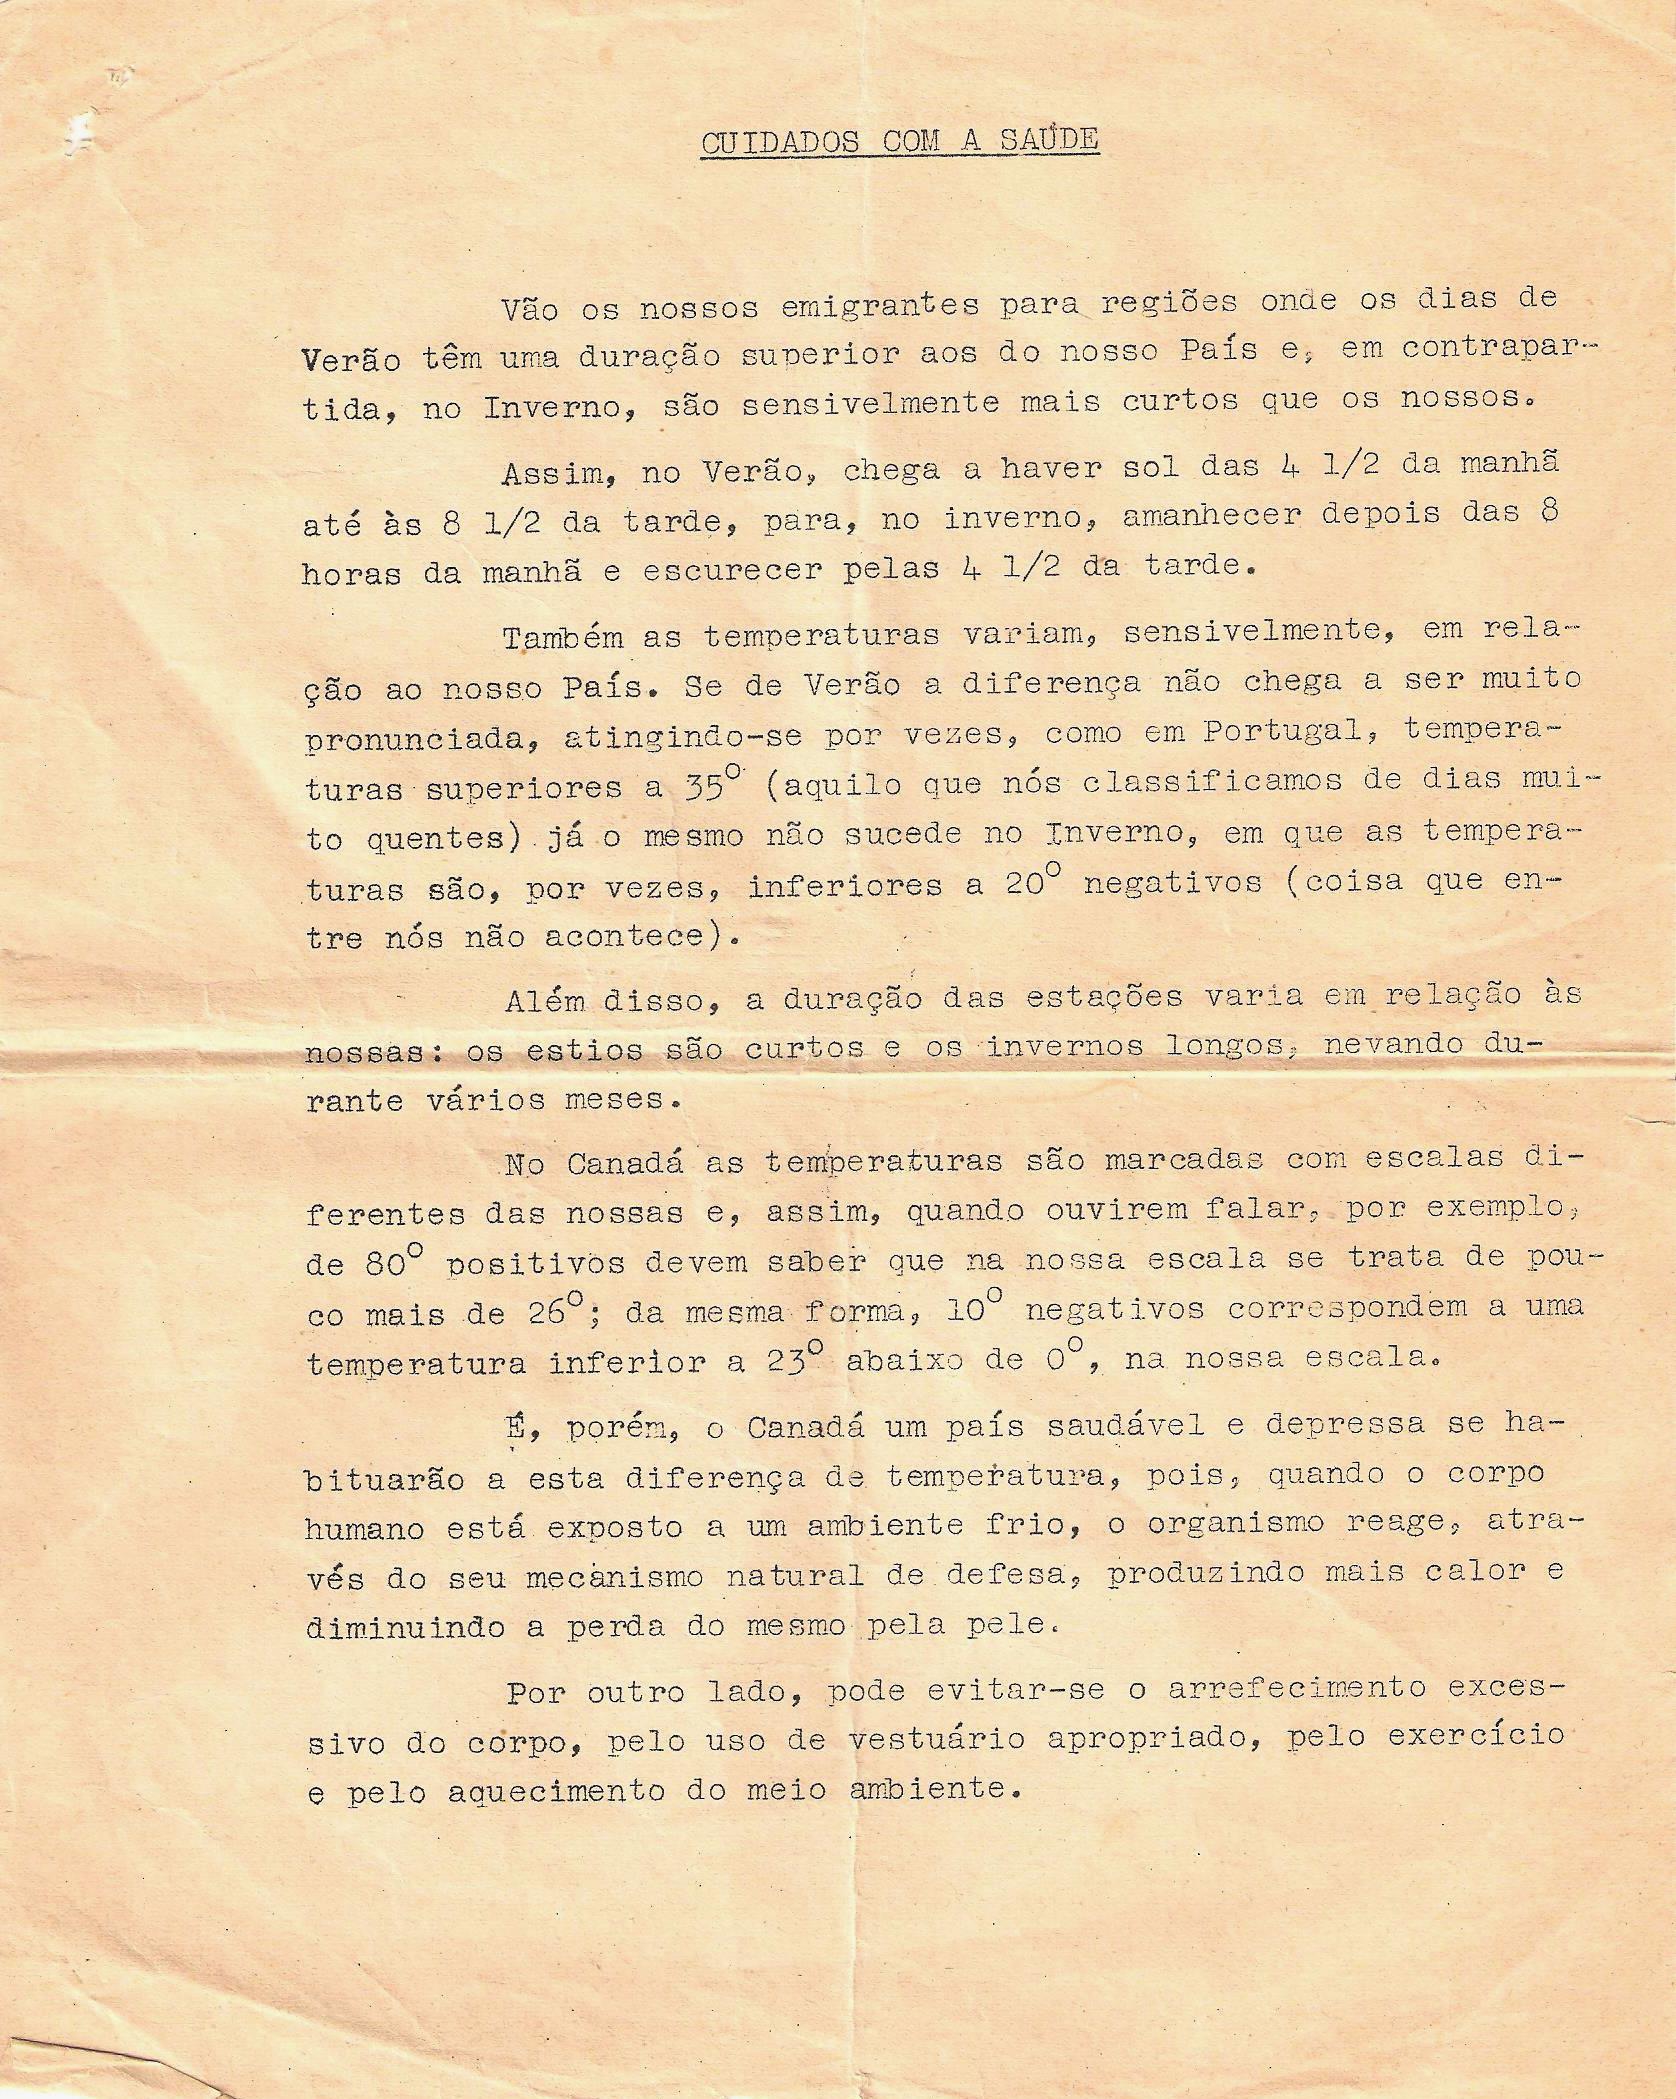 Première page d’un document de trois pages écrit en portugais et s’intitulant Cuidados com a saude donnant des informations sur les saisons et le climat. 